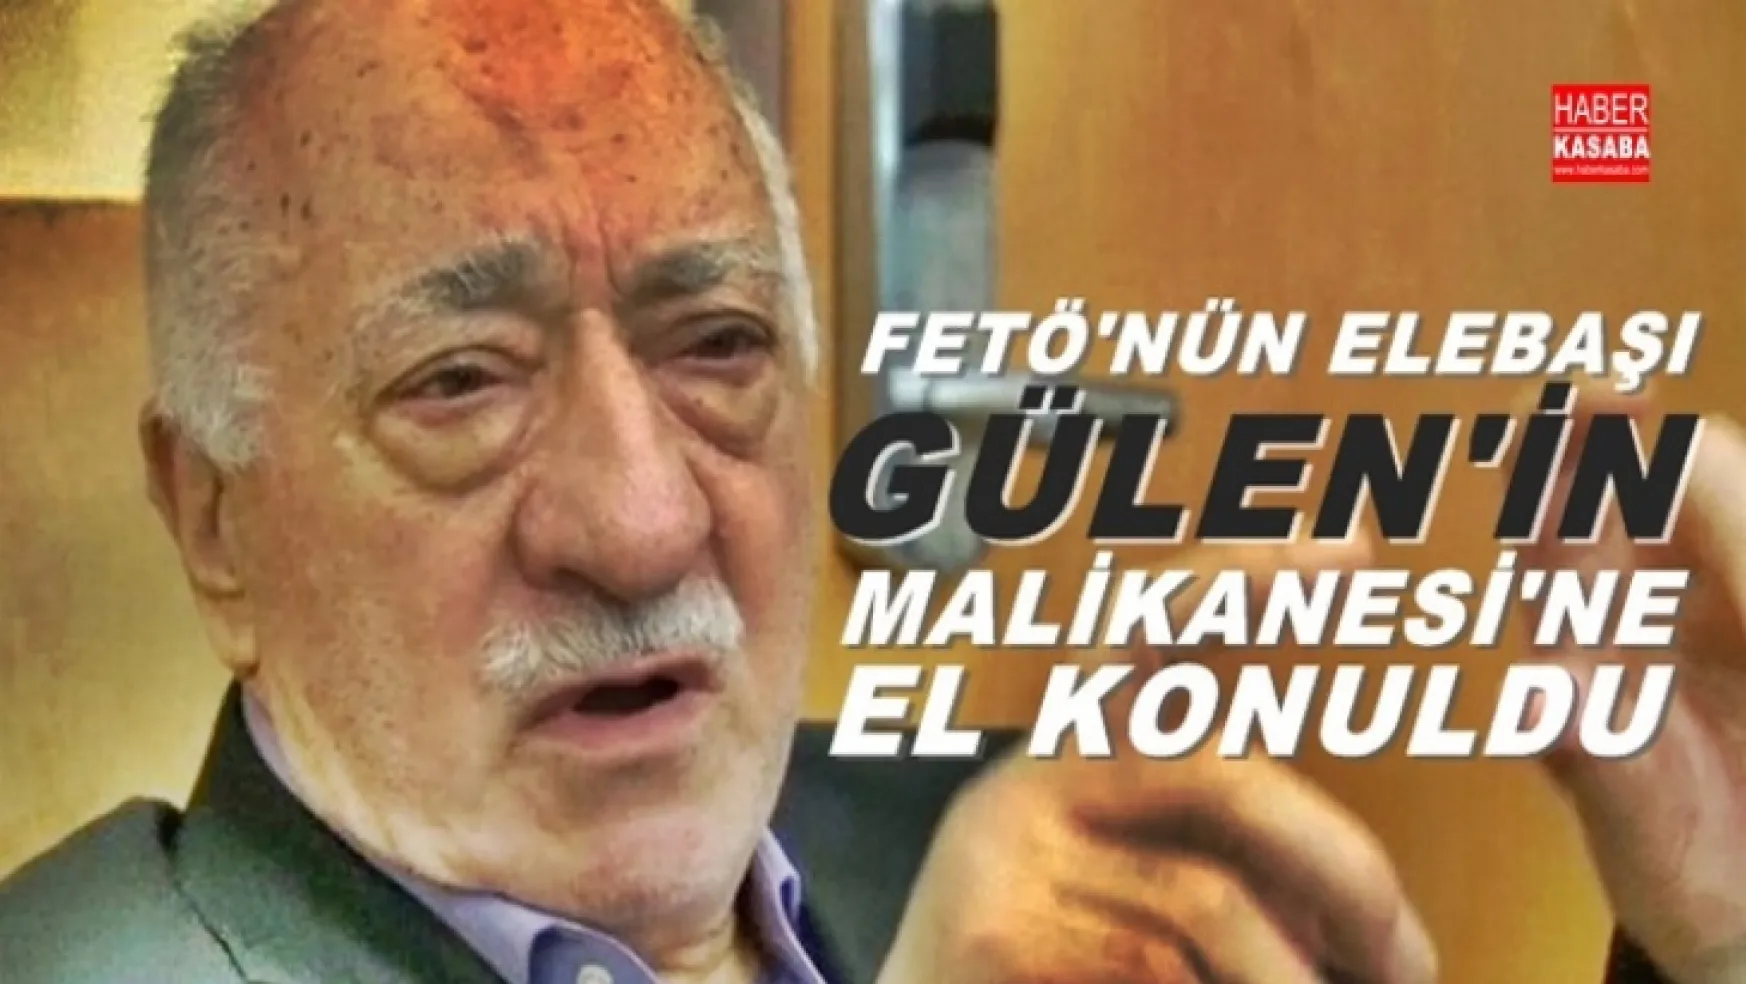 FETÖ'nün elebaşı olan, Gülen'in malikanesine el konuldu!